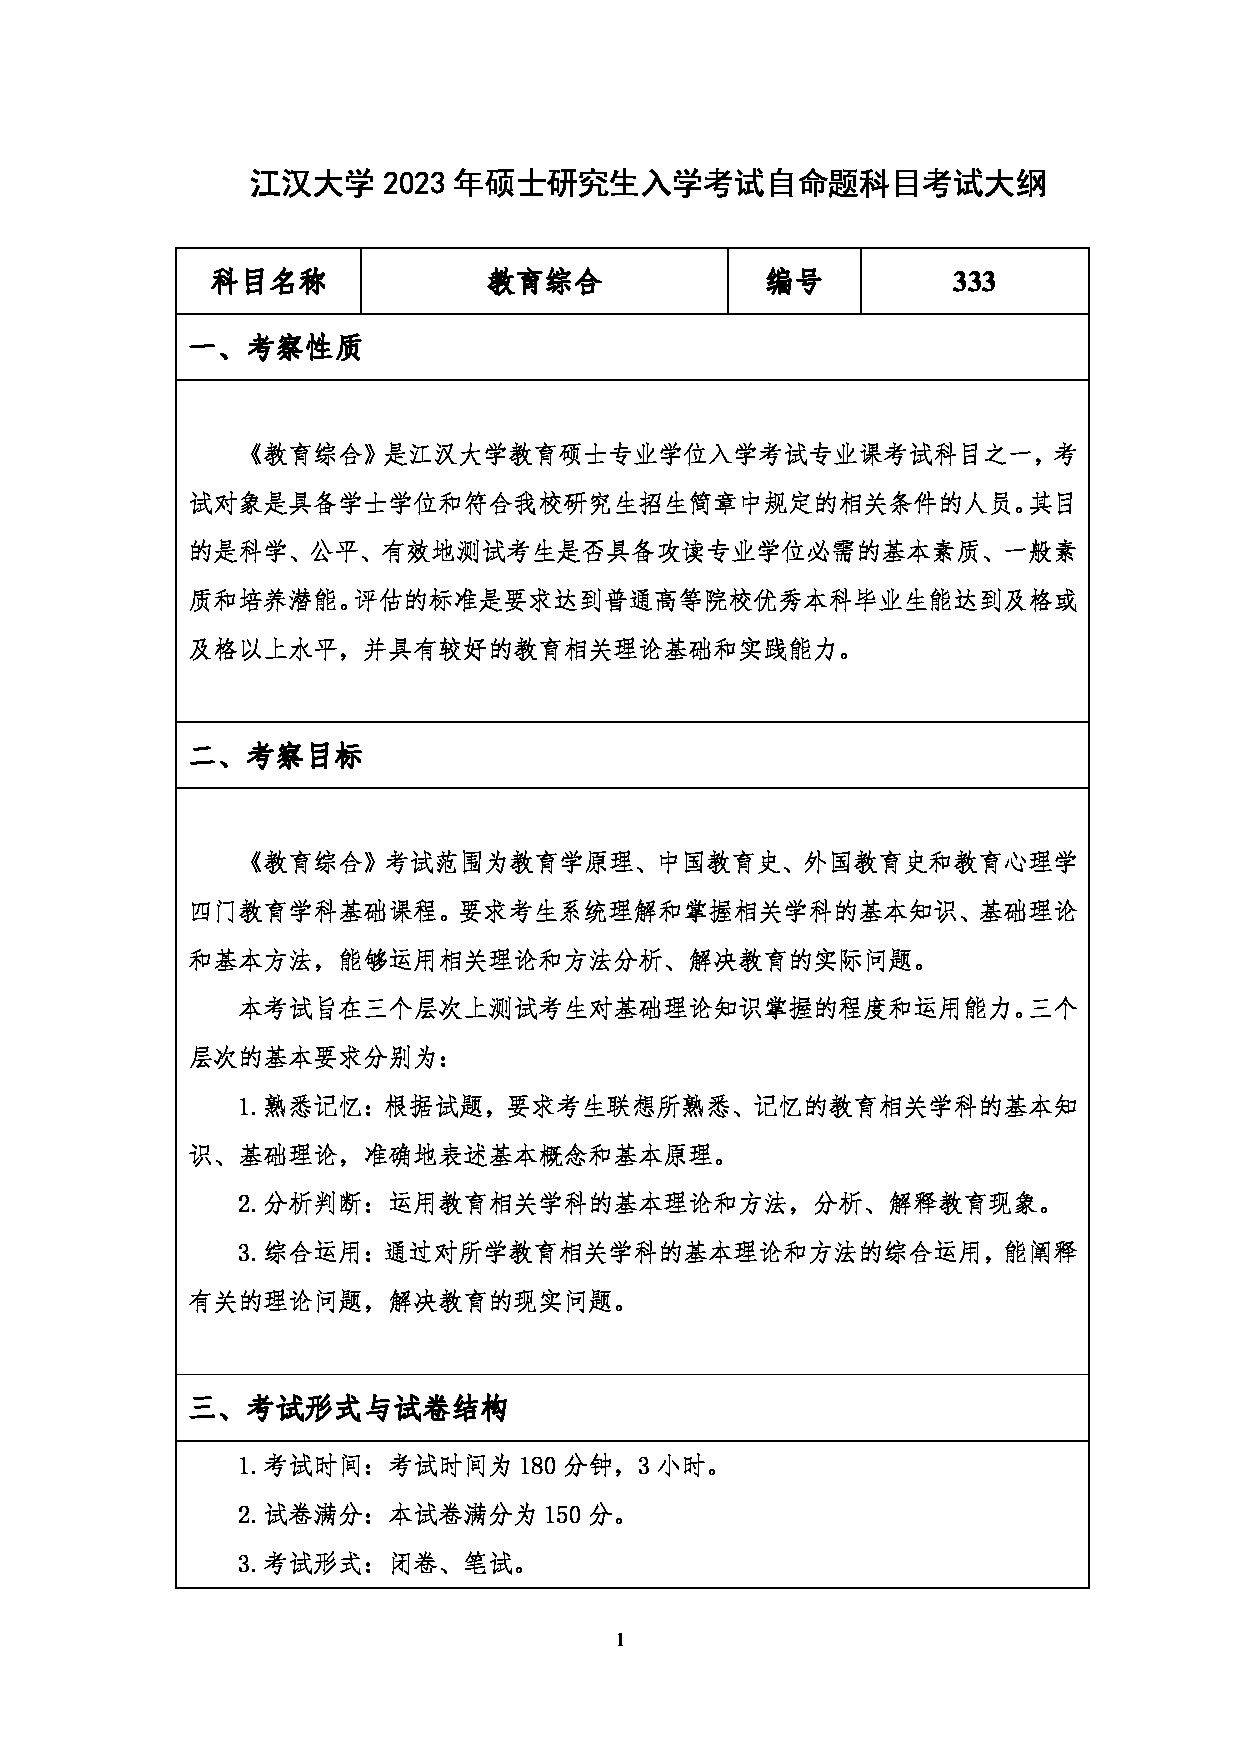 2023考研大纲：江汉大学2023年考研自命题科目 333教育综合 考试大纲第1页